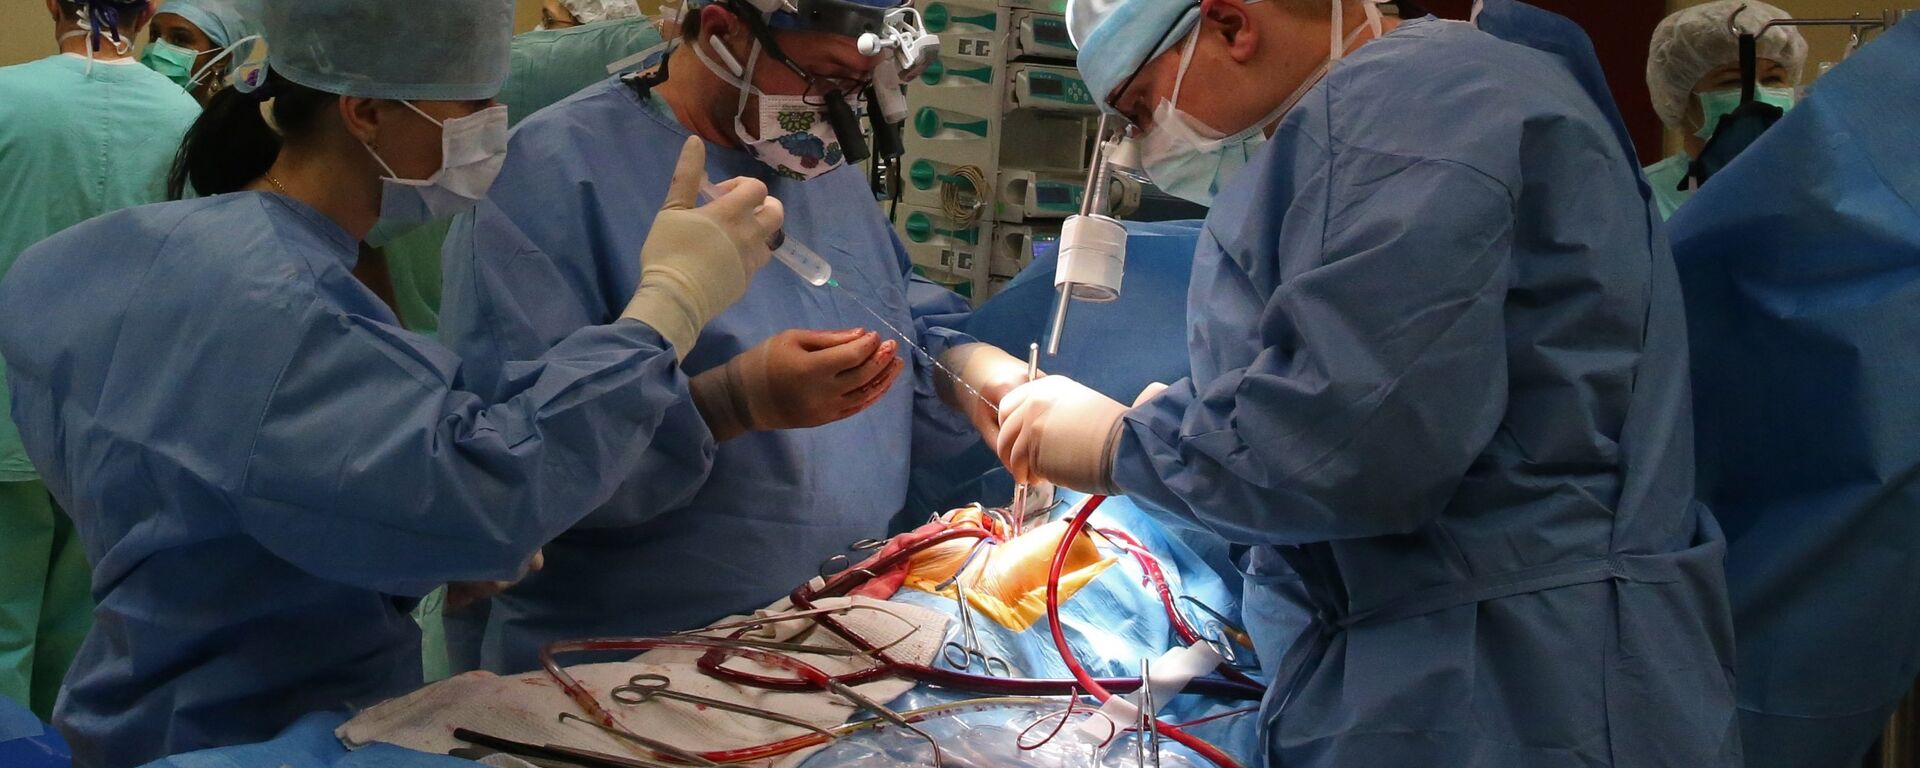 Хирурги проводят операцию на открытом сердце - Sputnik Latvija, 1920, 28.02.2018